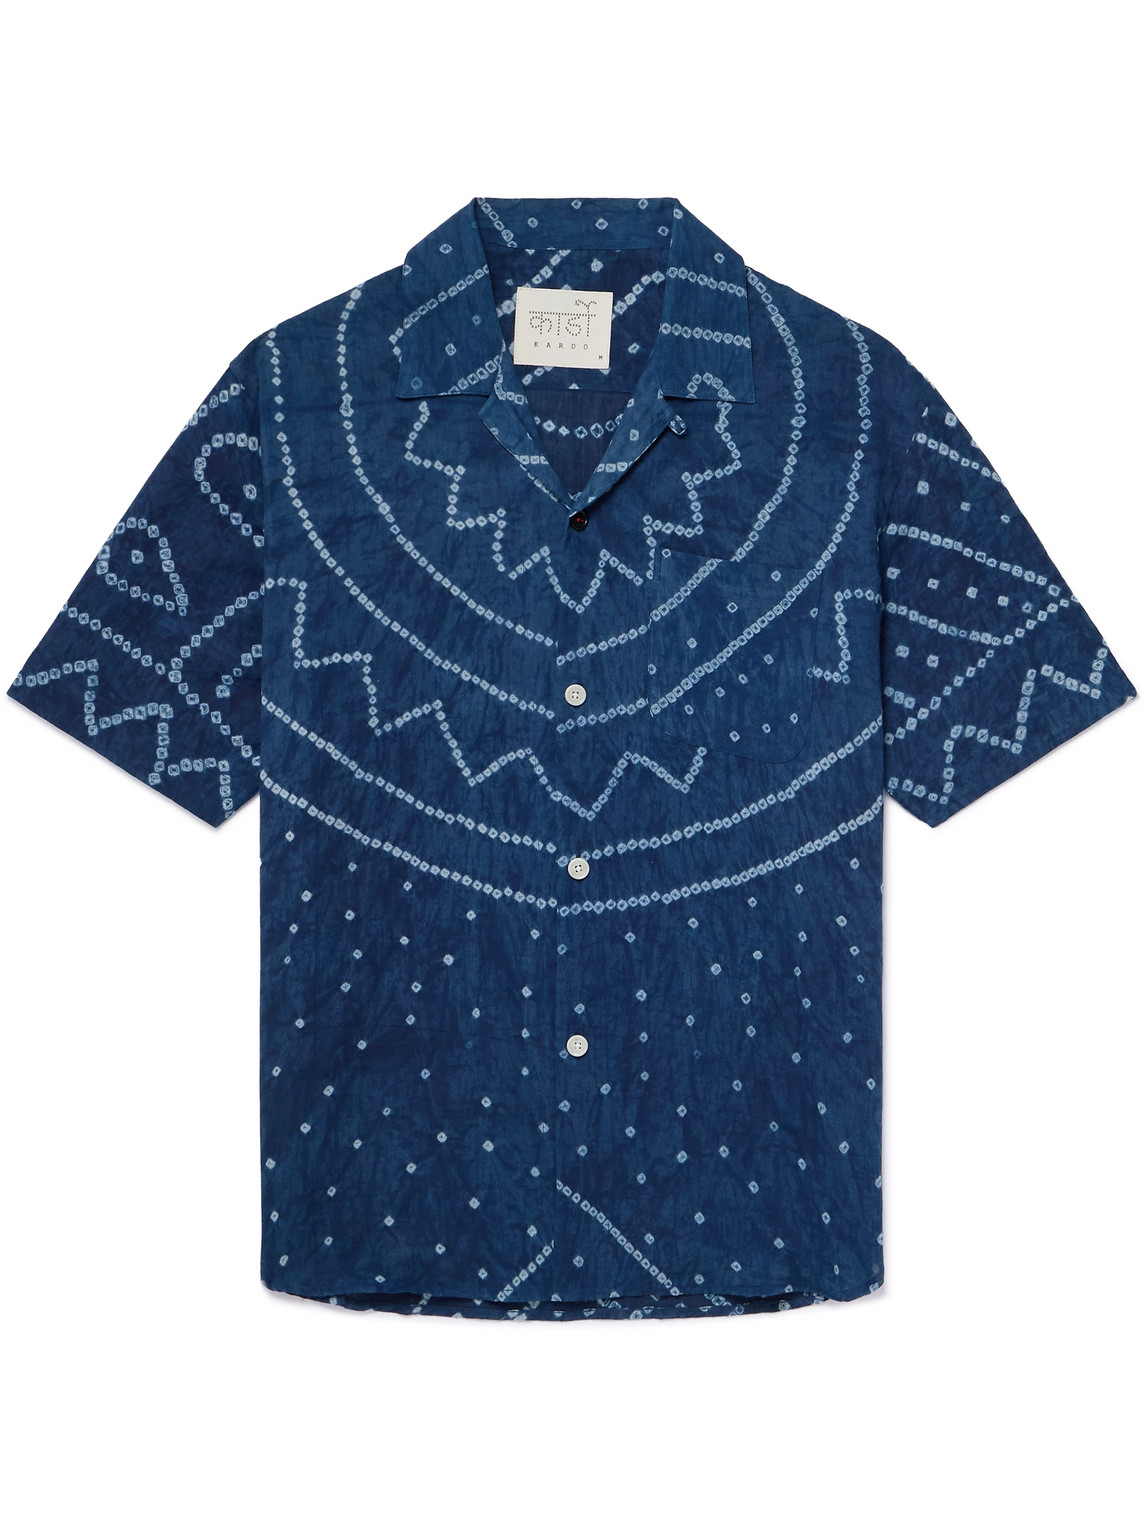 Kardo Ronen Convertible-collar Garment-dyed Cotton Shirt In Blue